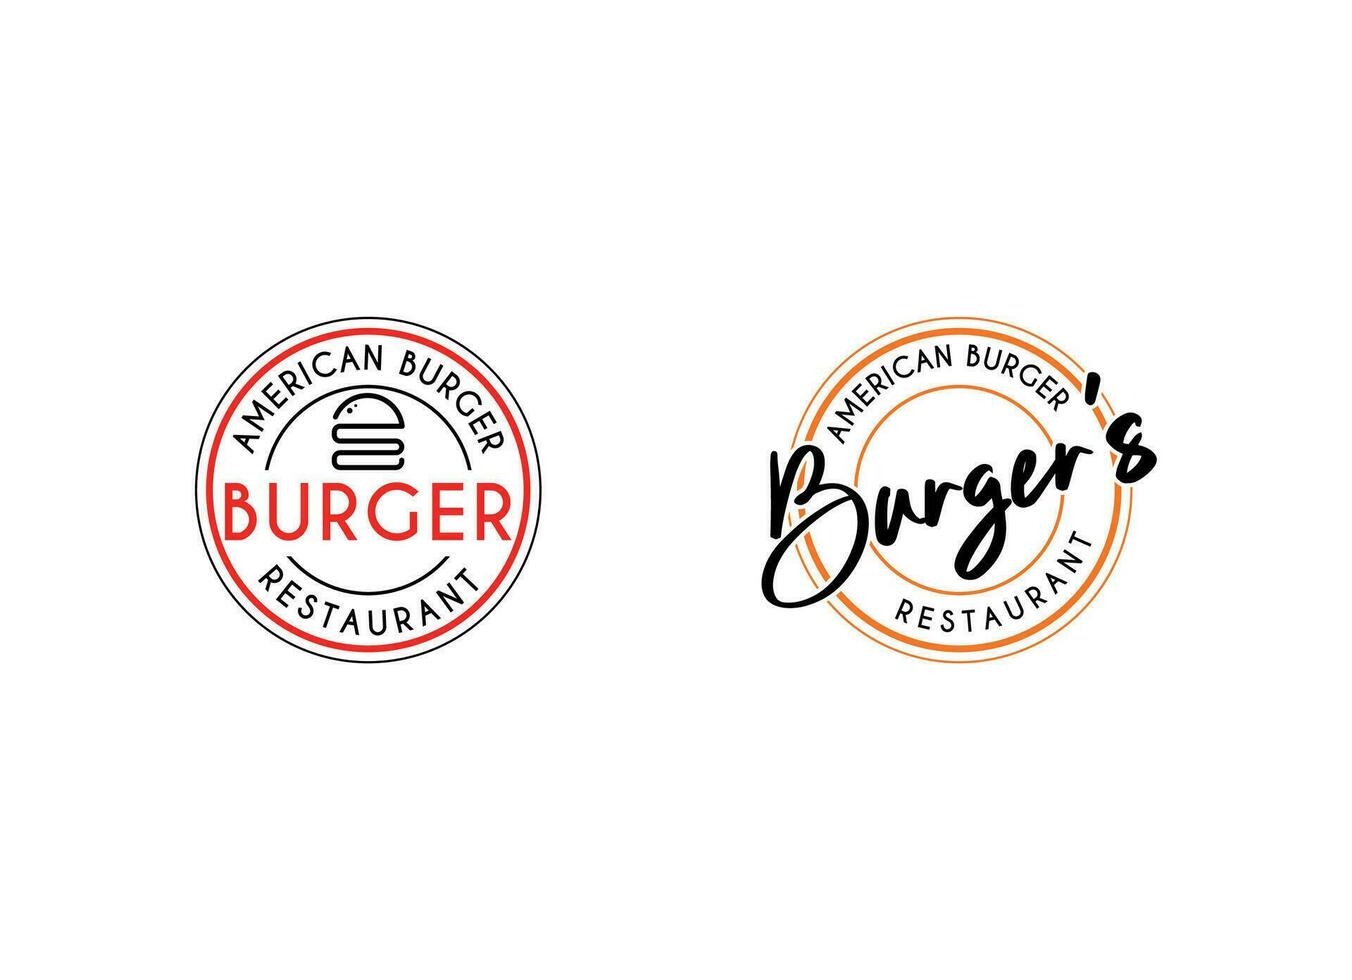 Burgers emblem for streets food logo design template. Burger vintage stamp sticker vector